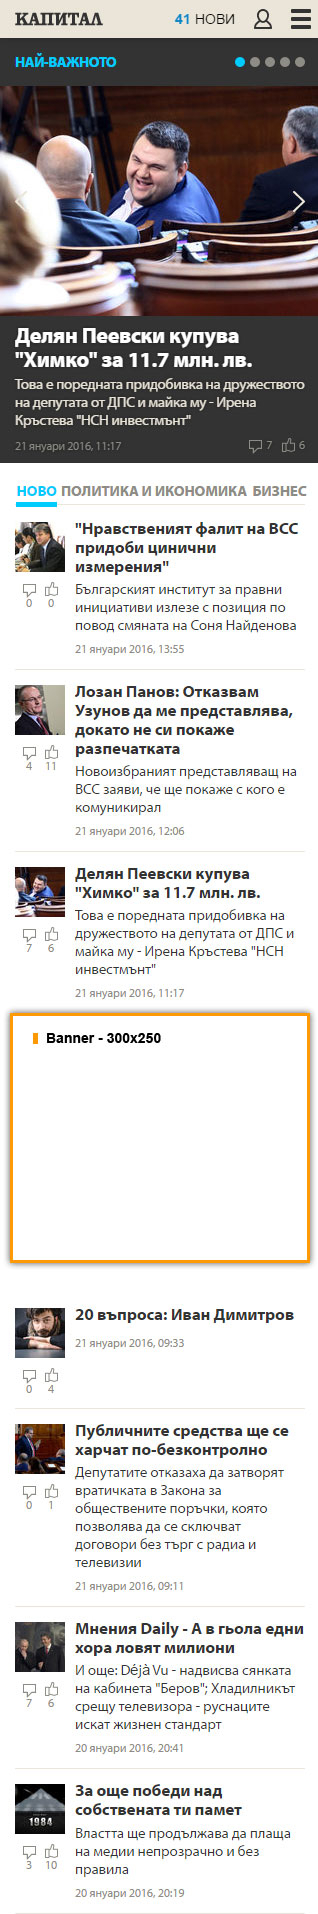 Цени за реклама в Capital.bg - от 27 декември 2011